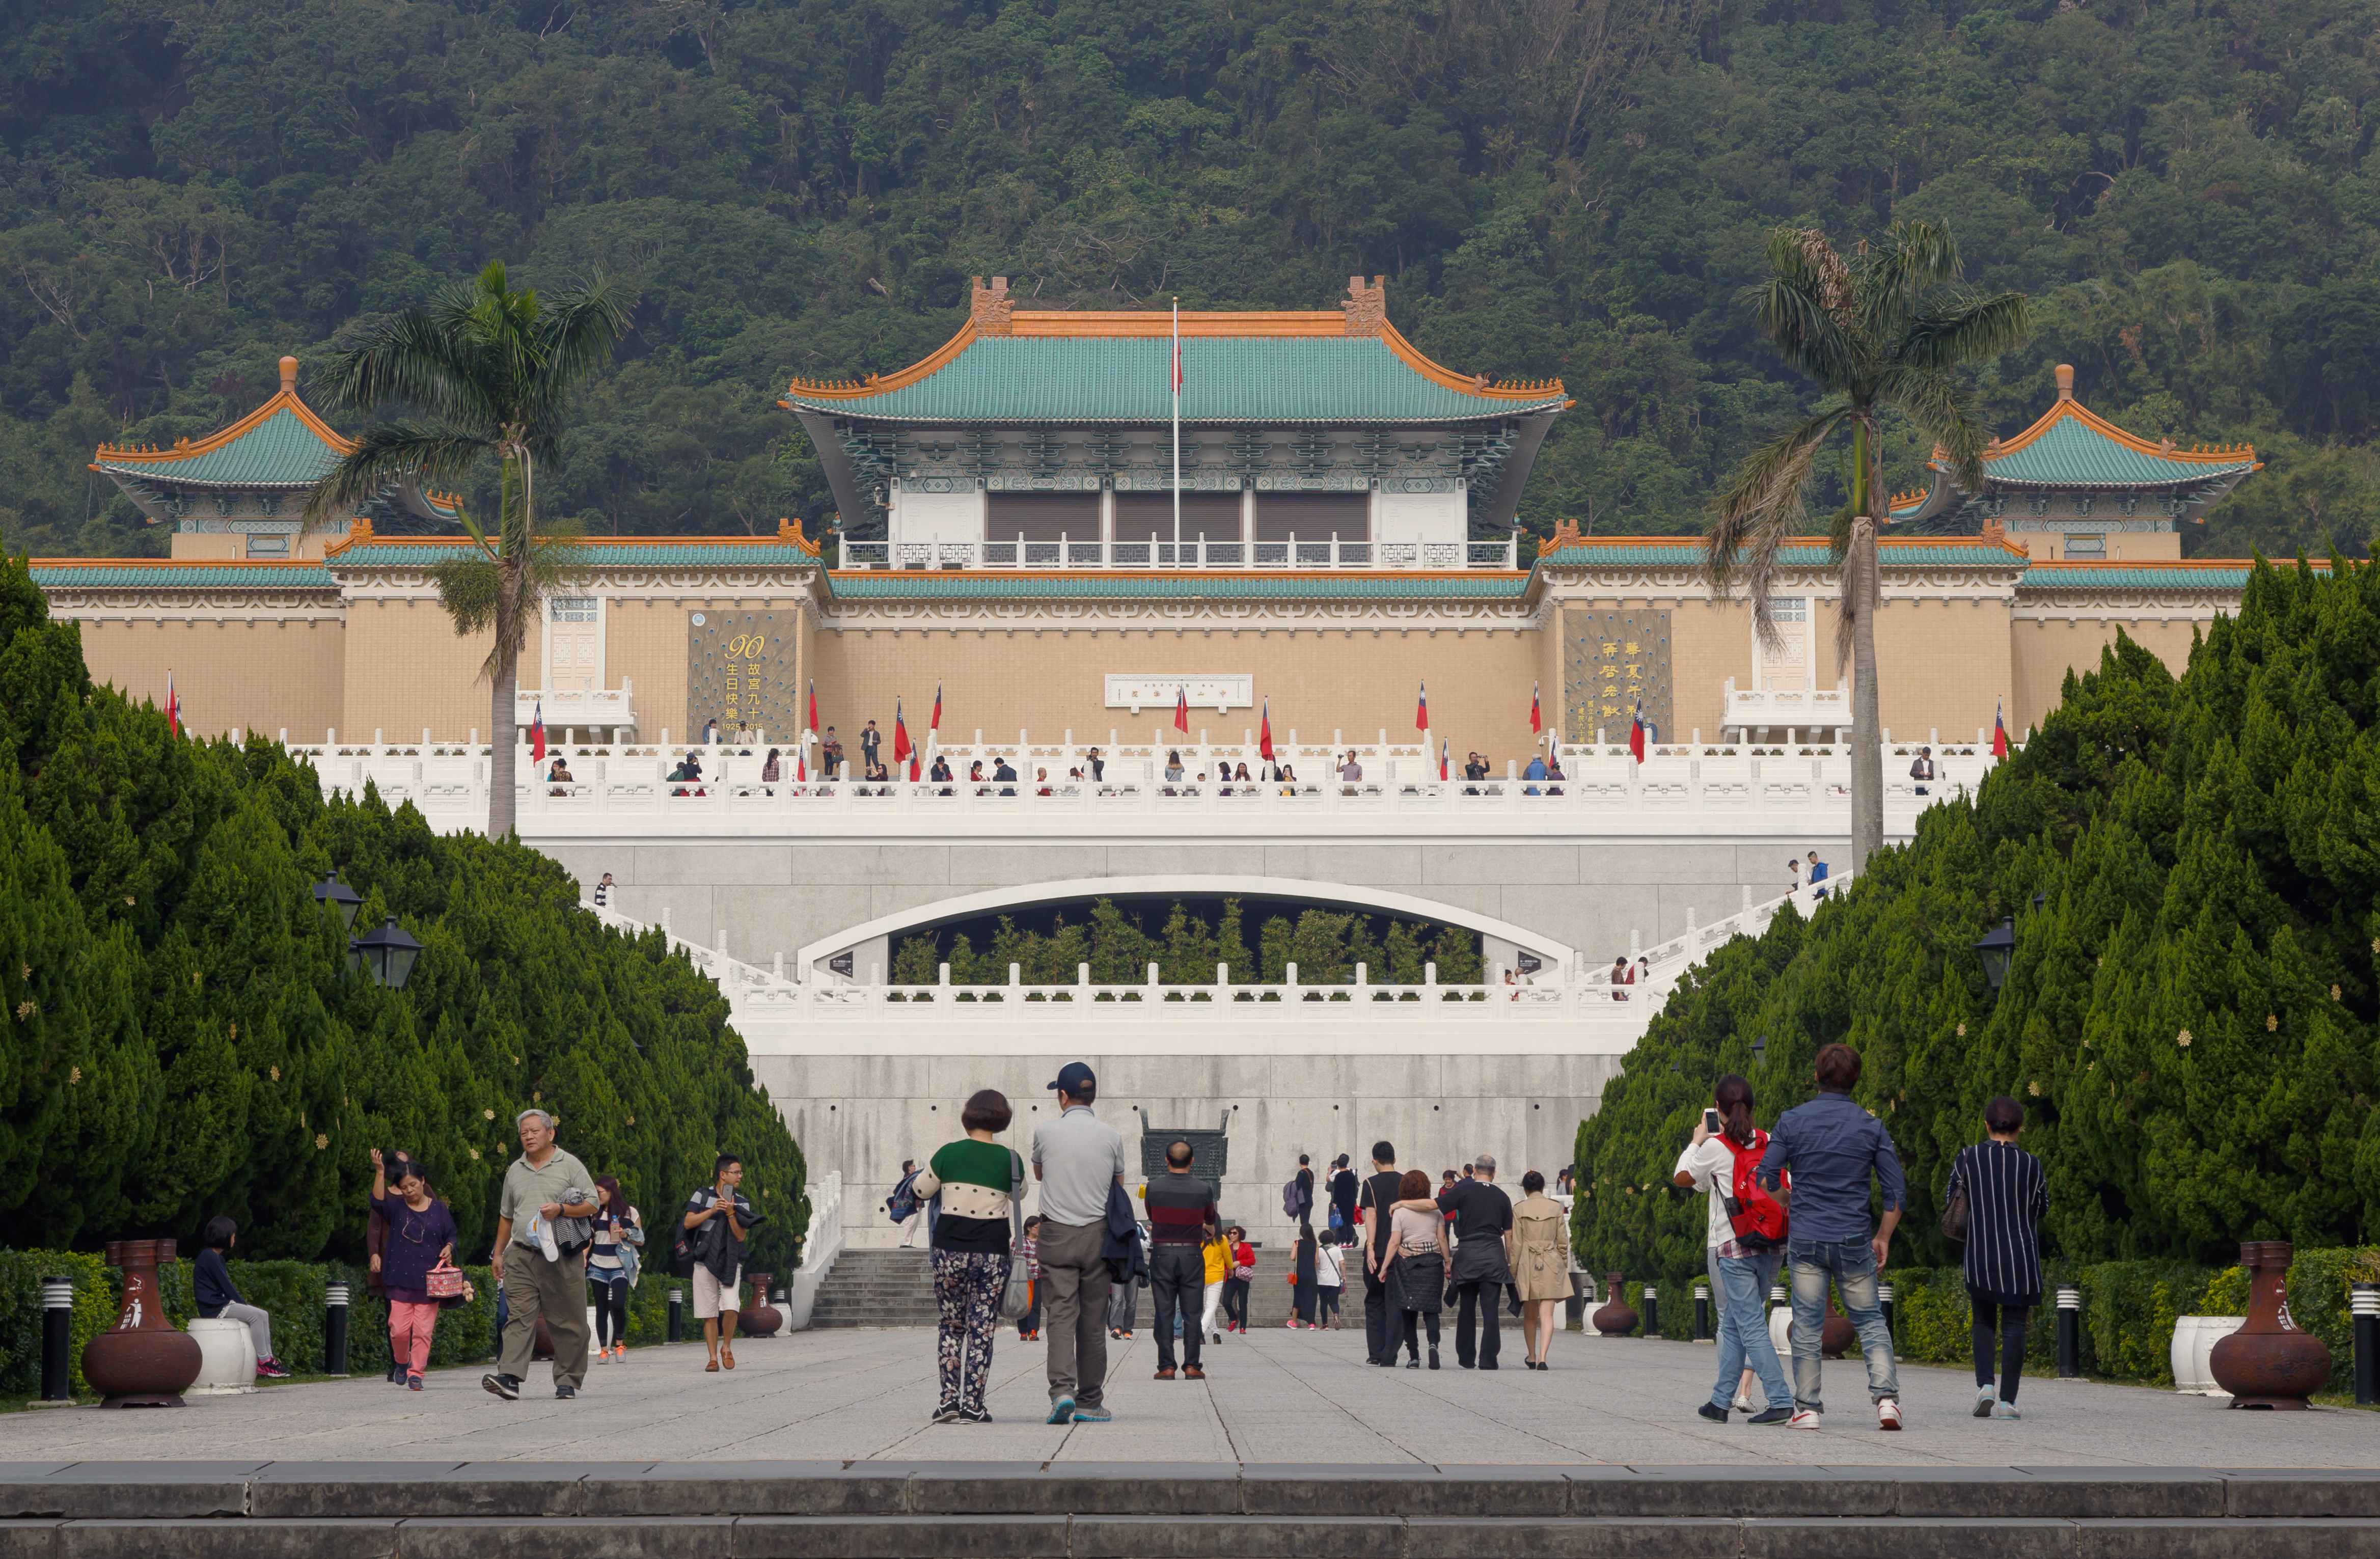 Bảo tàng Cố cung Quốc gia - National Palace Museum - Đài Bắc - Đài Loan